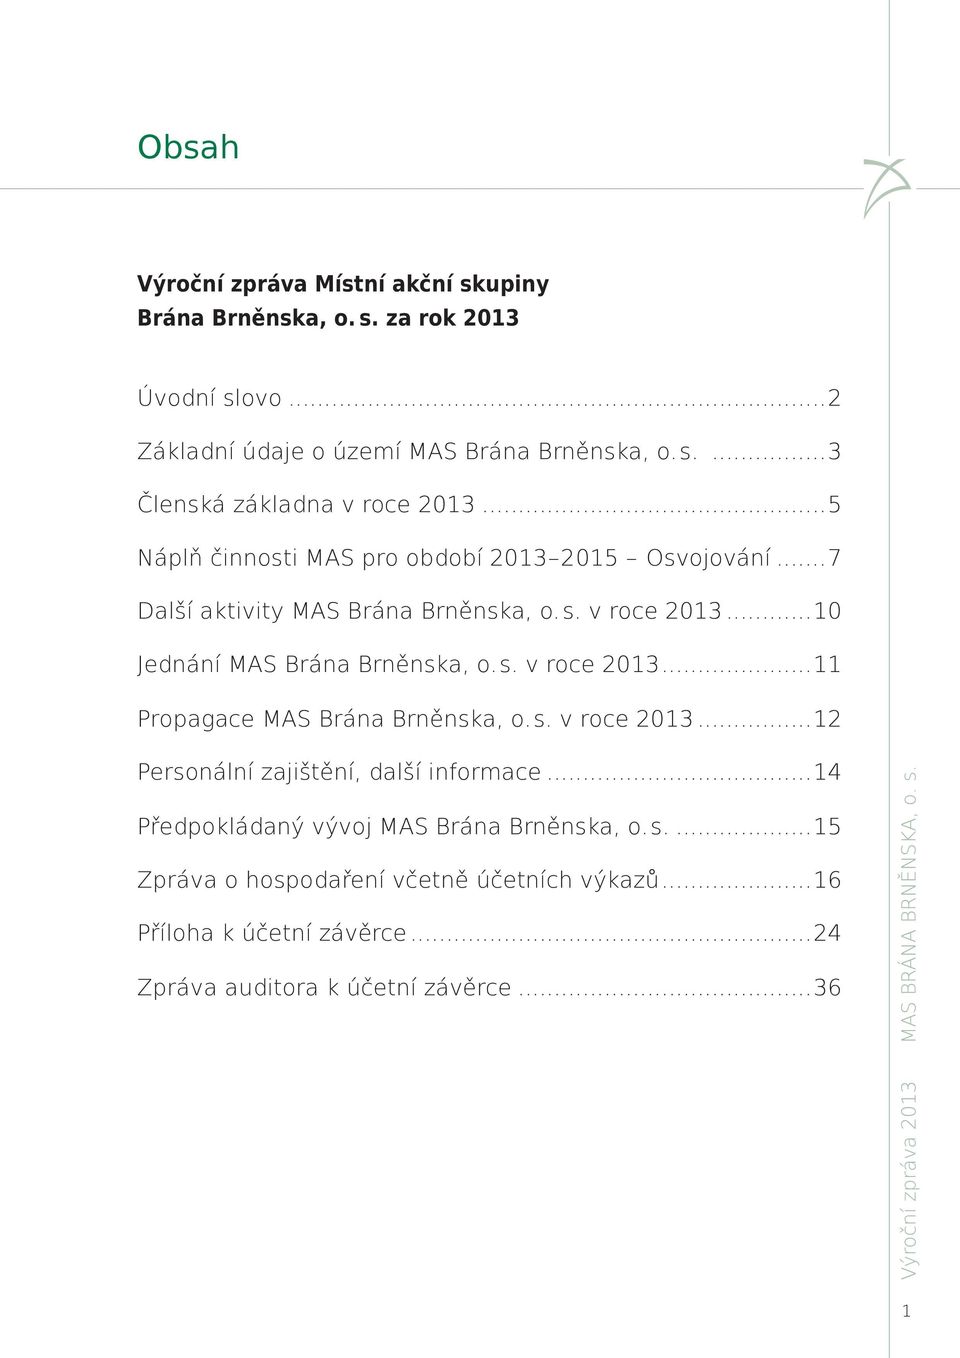 s. v roce 2013...12 Personální zajištění, další informace...14 Předpokládaný vývoj MAS Brána Brněnska, o.s....15 Zpráva o hospodaření včetně účetních výkazů.